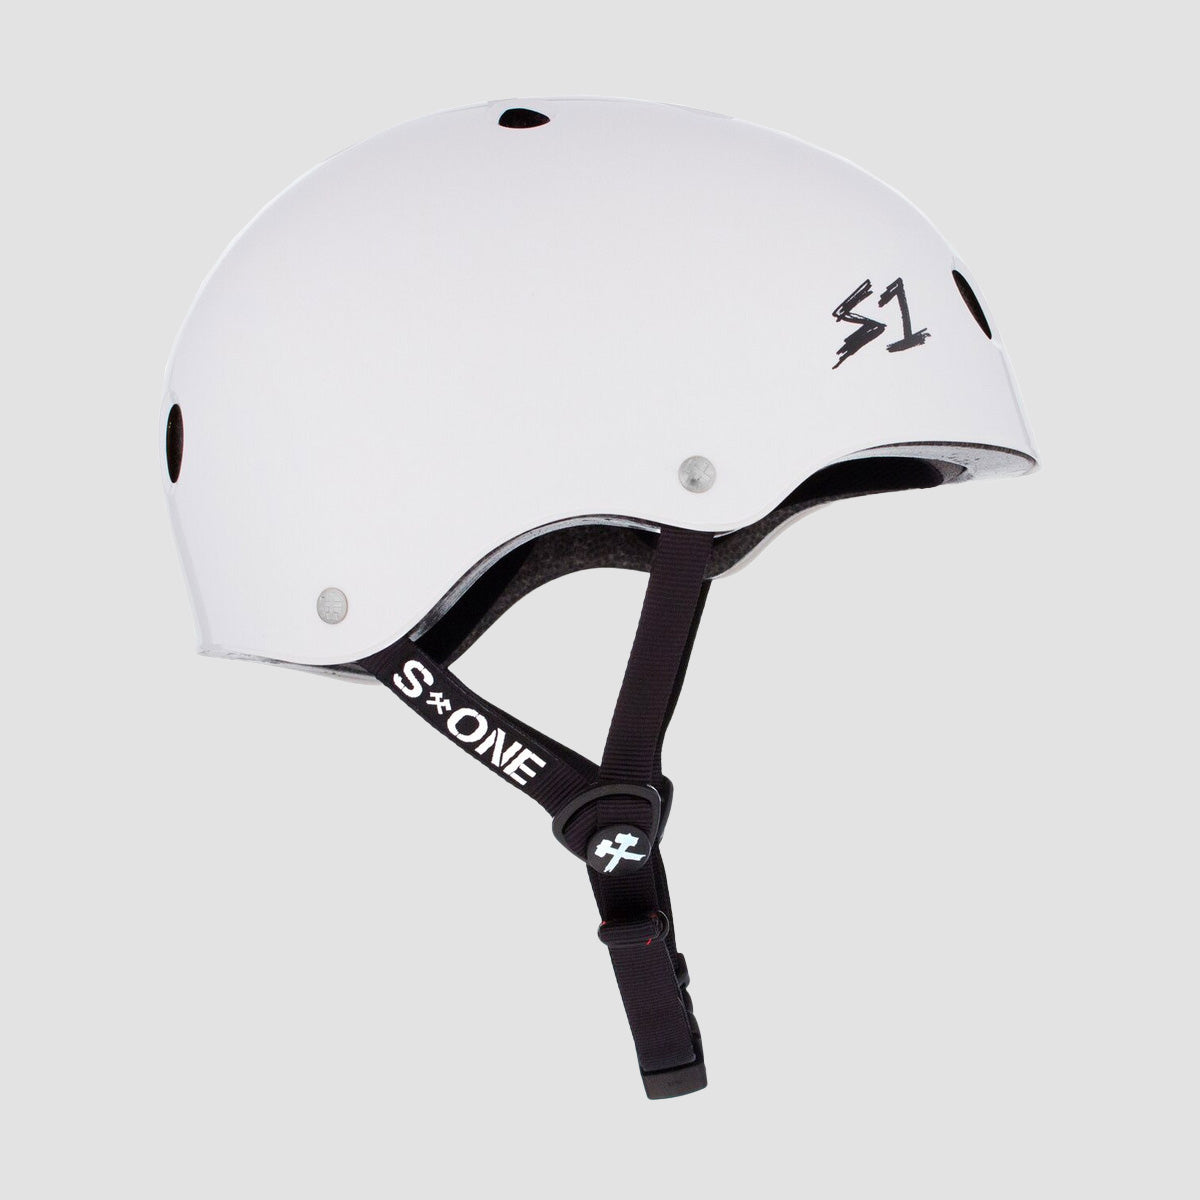 S1 Lifer Helmet White Gloss